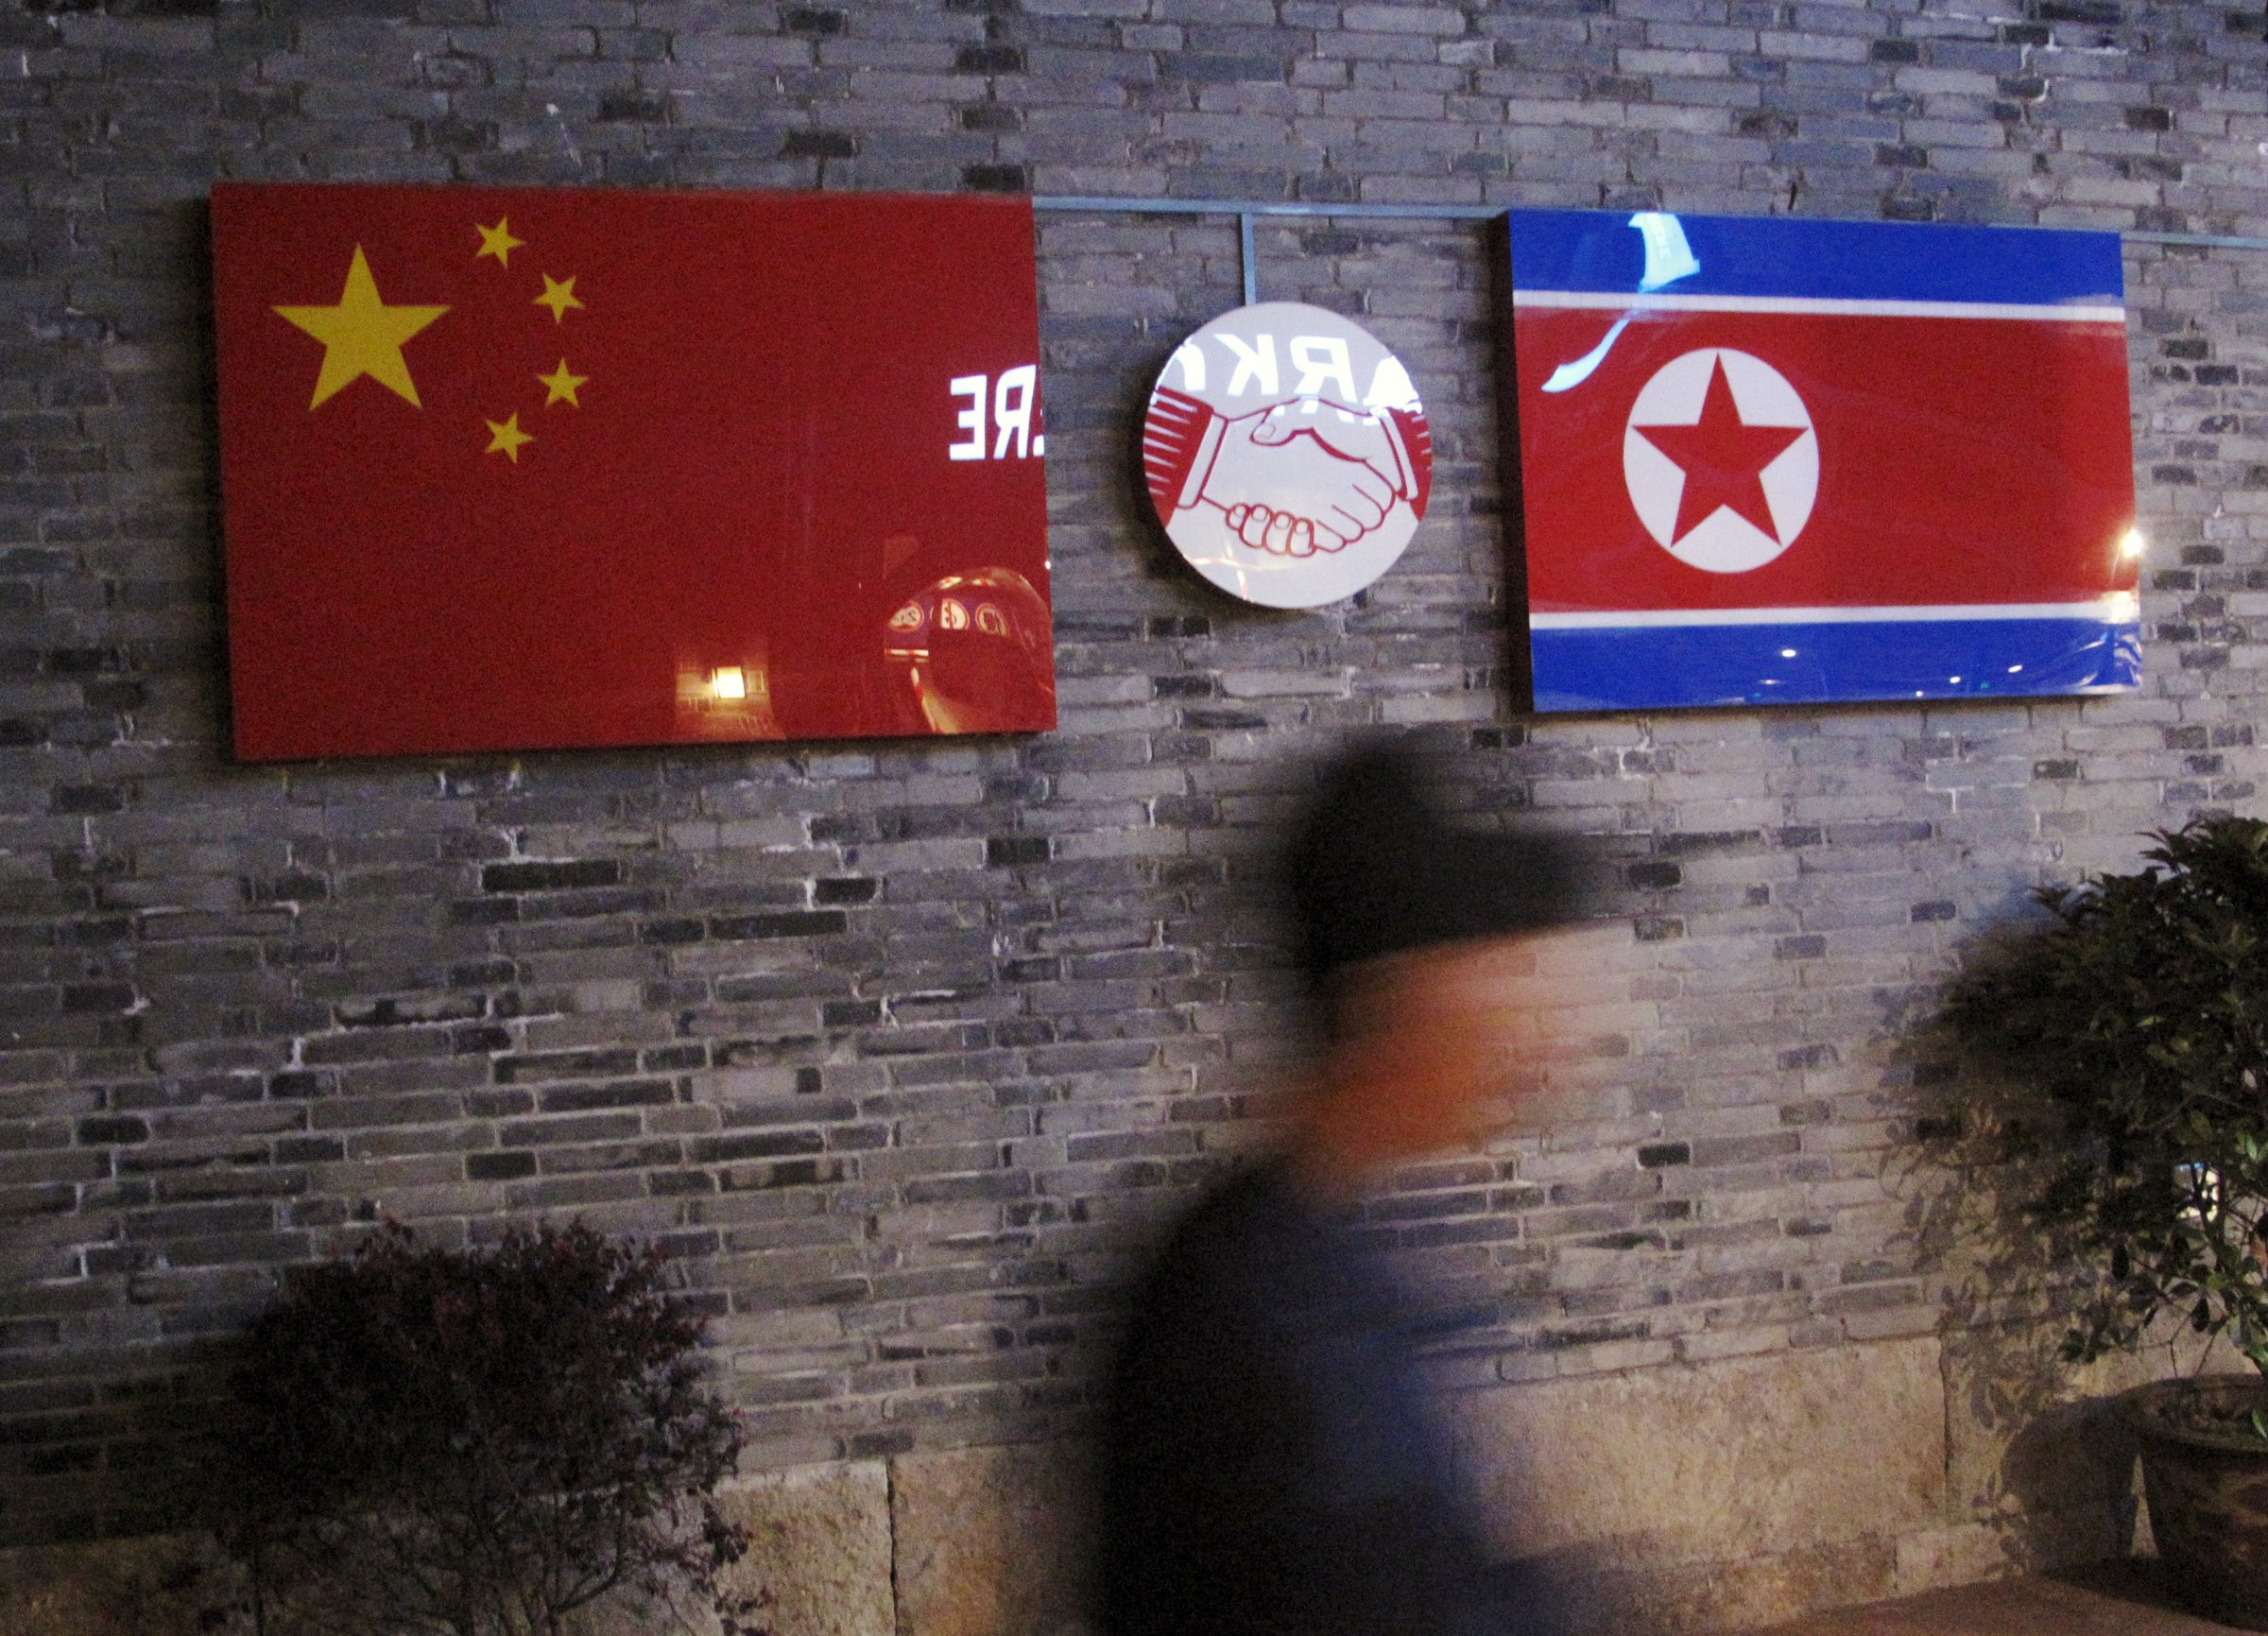 Η λύση στο πρόβλημα με τη Βόρεια Κορέα δεν μπορεί να στηρίζεται μόνο στην επιβολή κυρώσεων, υποστηρίζει η Κίνα